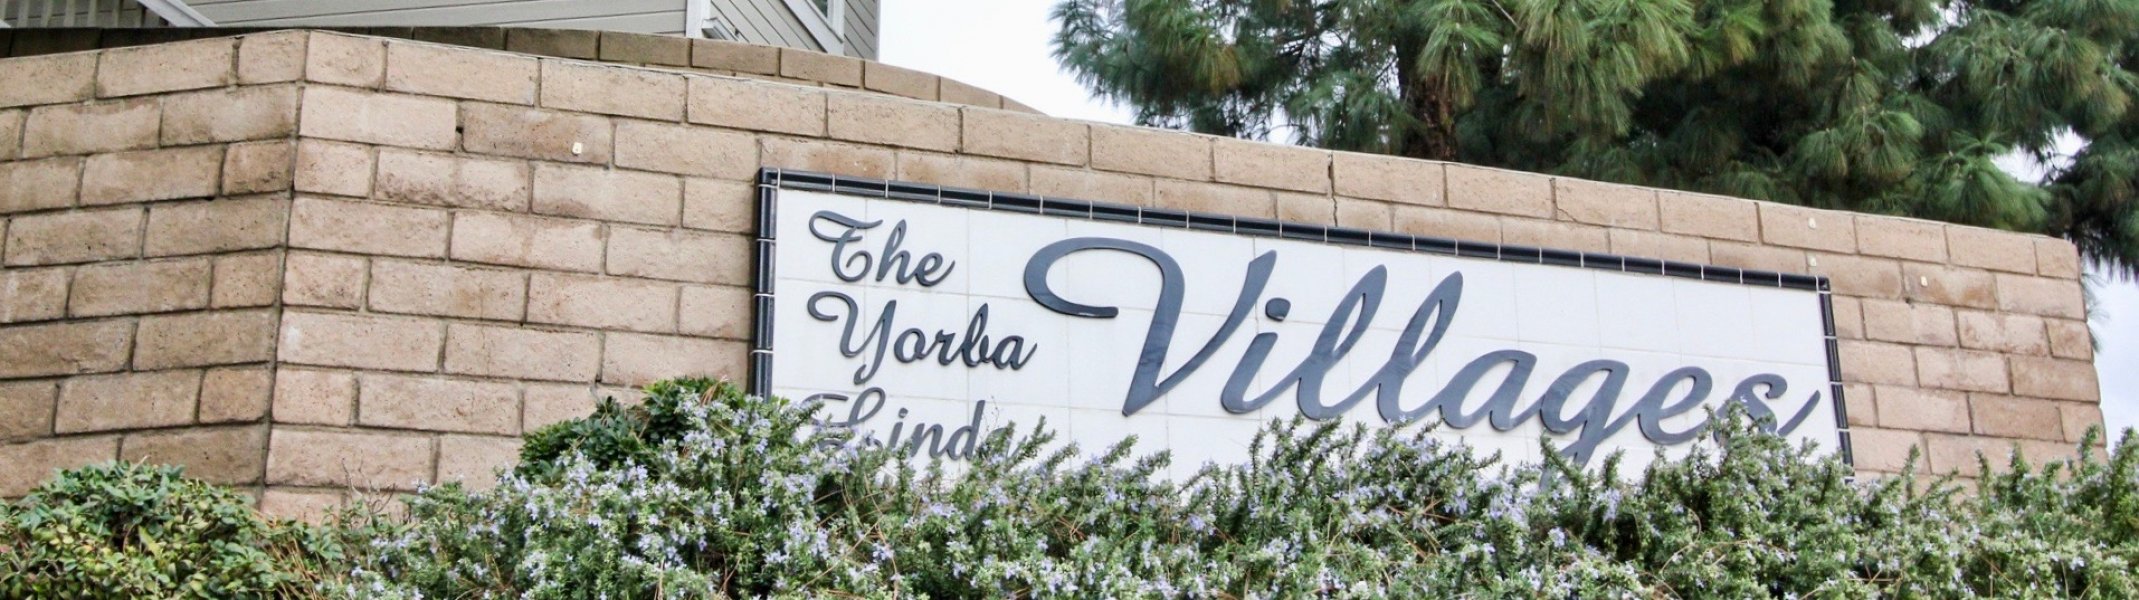 Yorba Linda Villages